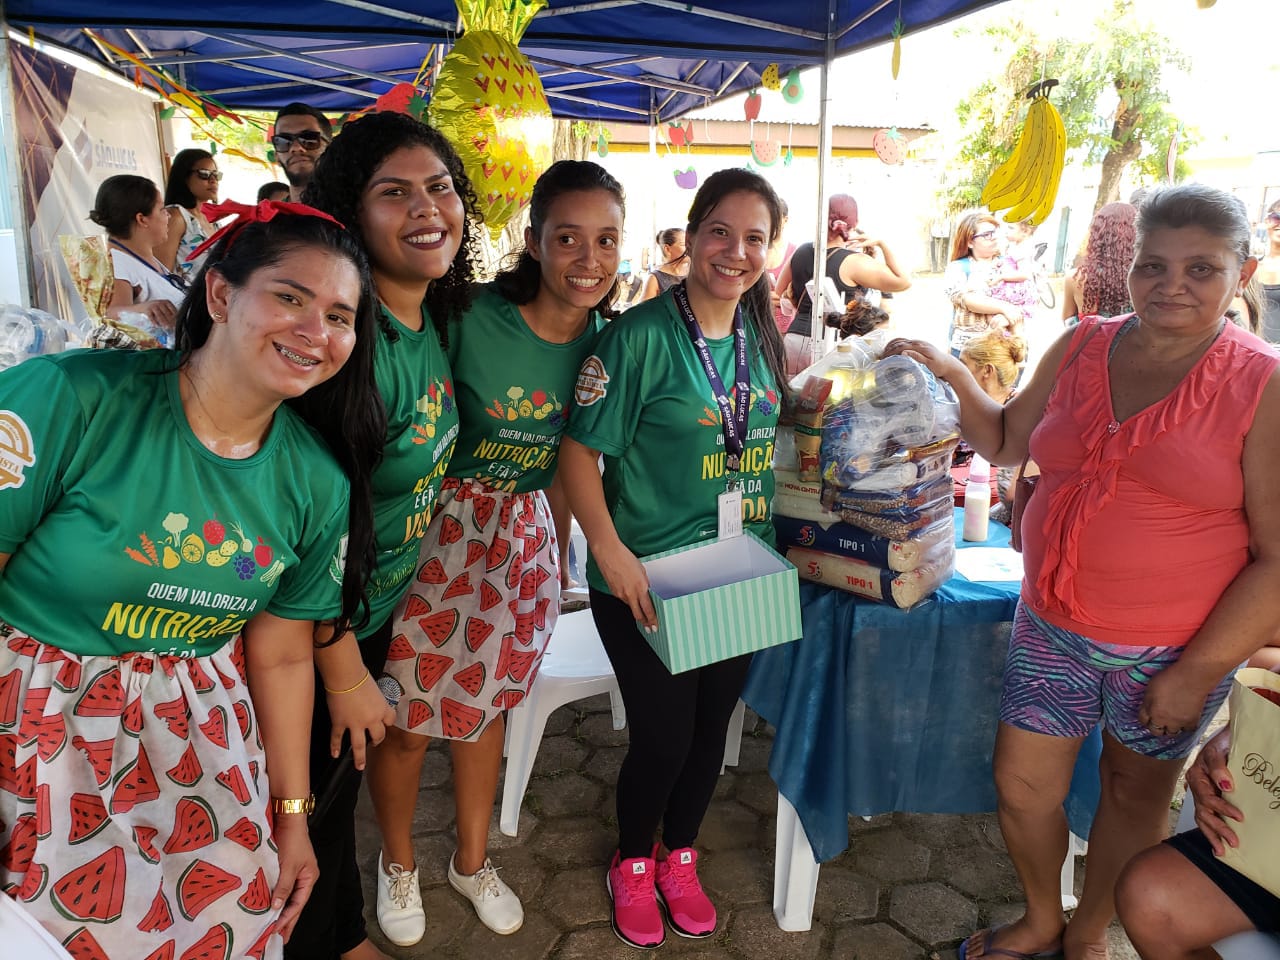 Unidade de saúde Osvaldo Piana e universitários promoveram ação social no dia do nutricionista 